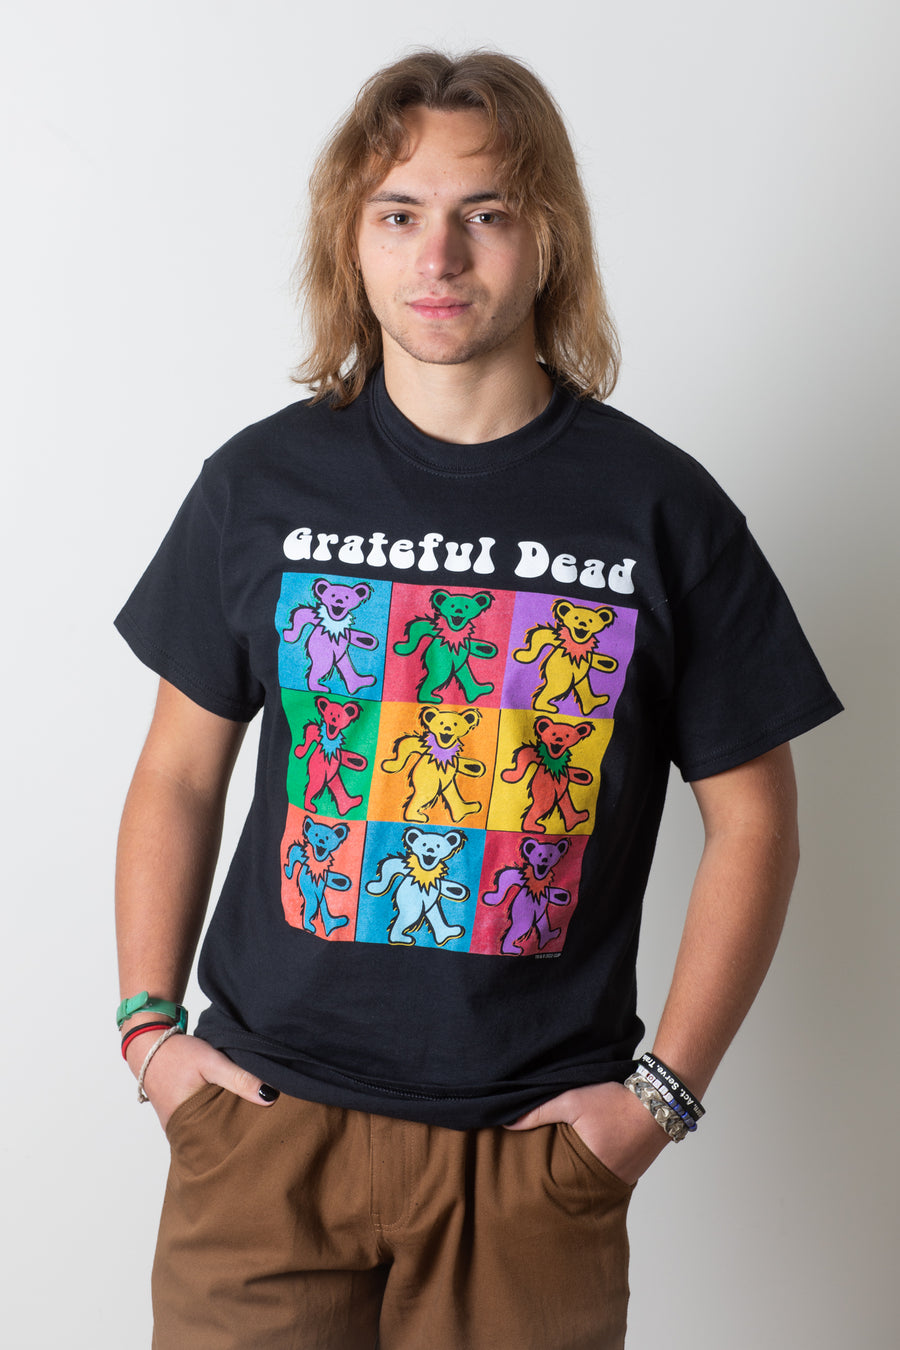 Starry Bears Tie Dye Grateful Dead T-Shirt in Multicolor | Mexicali Blues